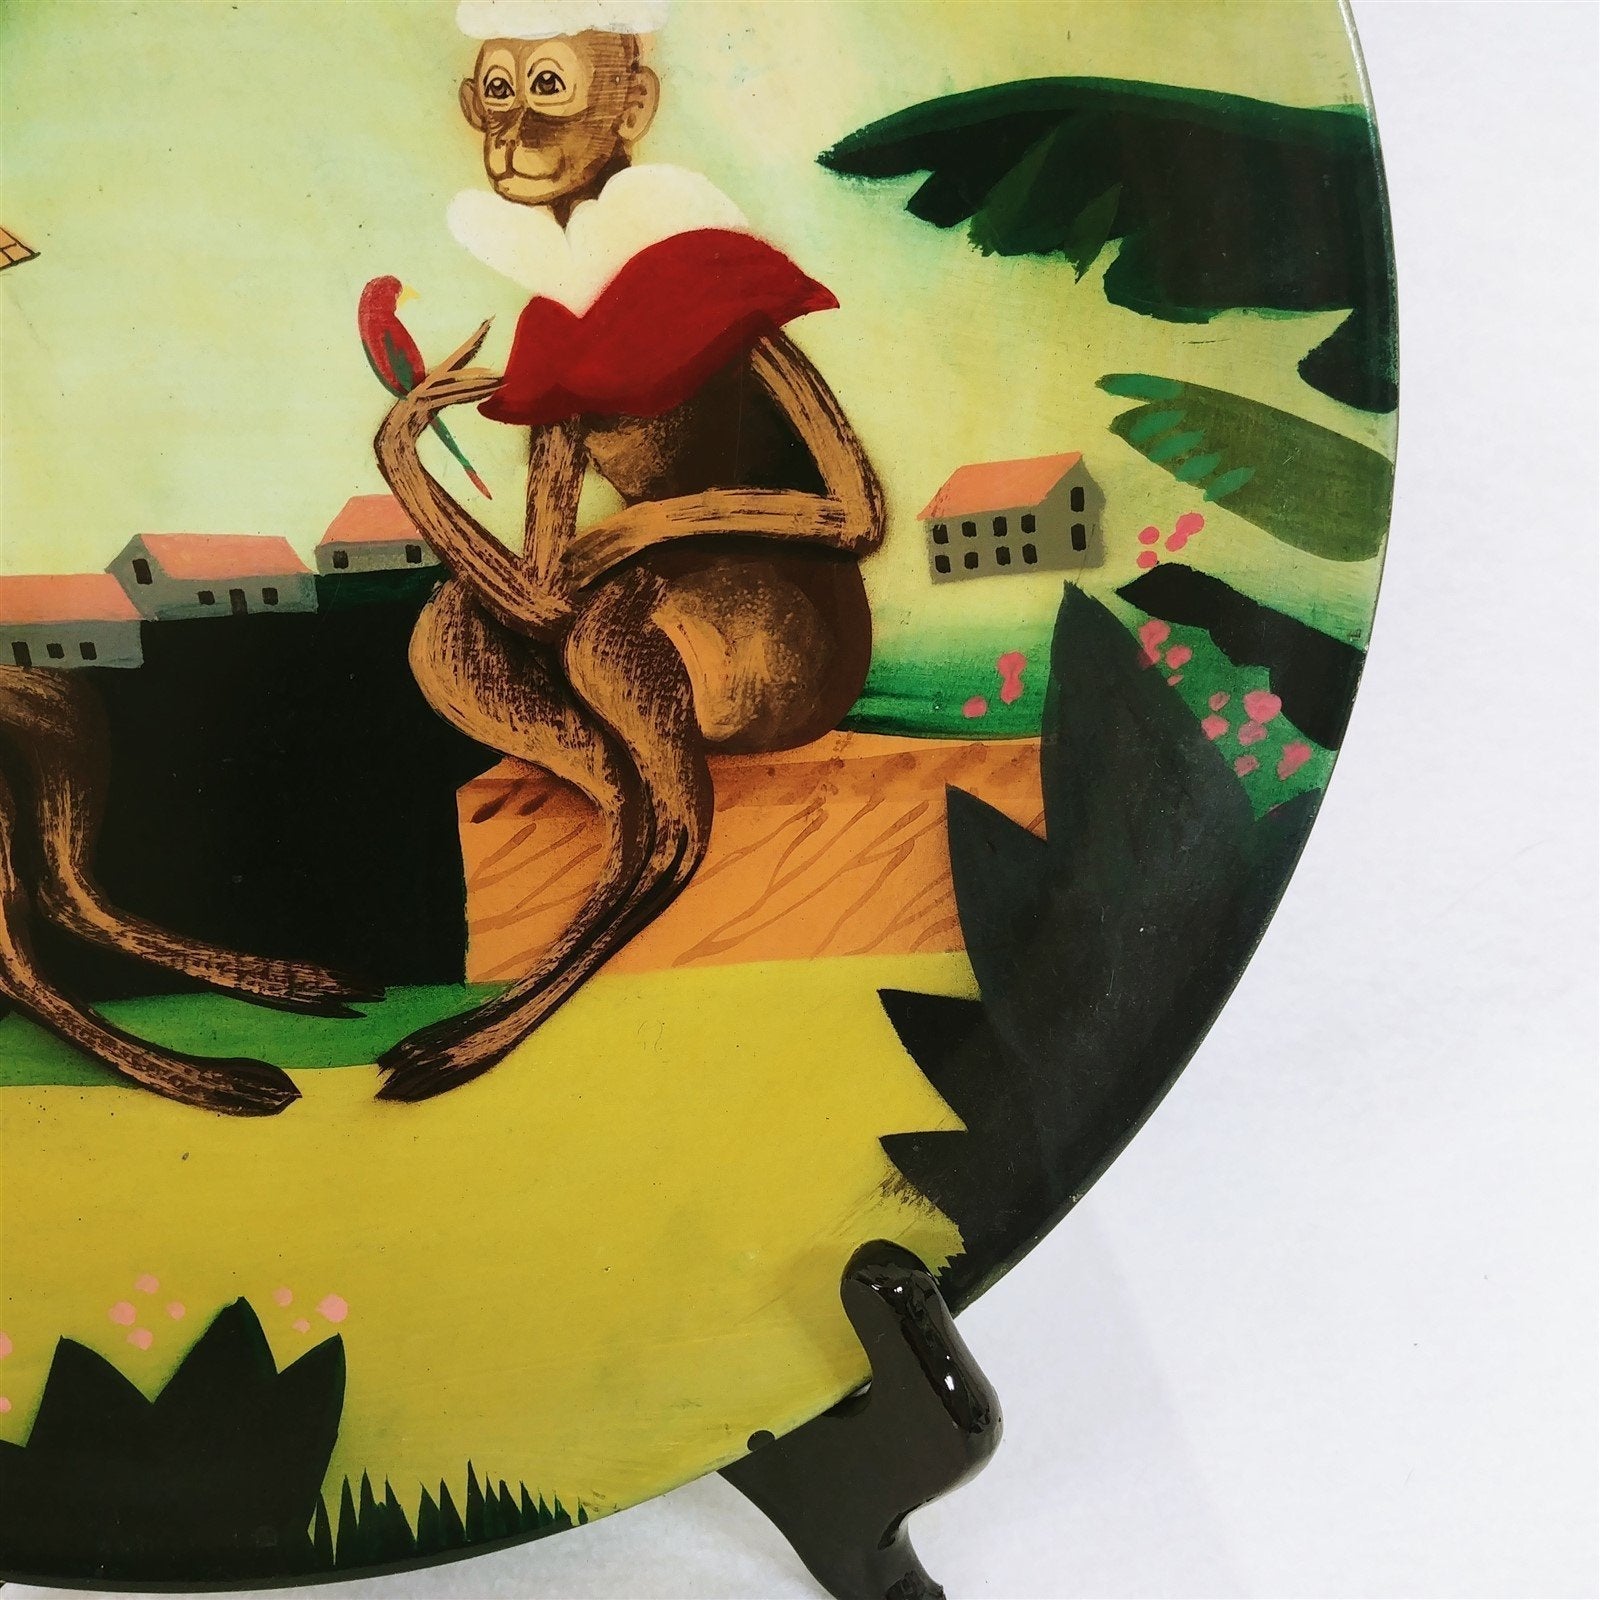 Decorative Plate Golden Monkey Colonial Decor Colorful Vintage Decor 12"